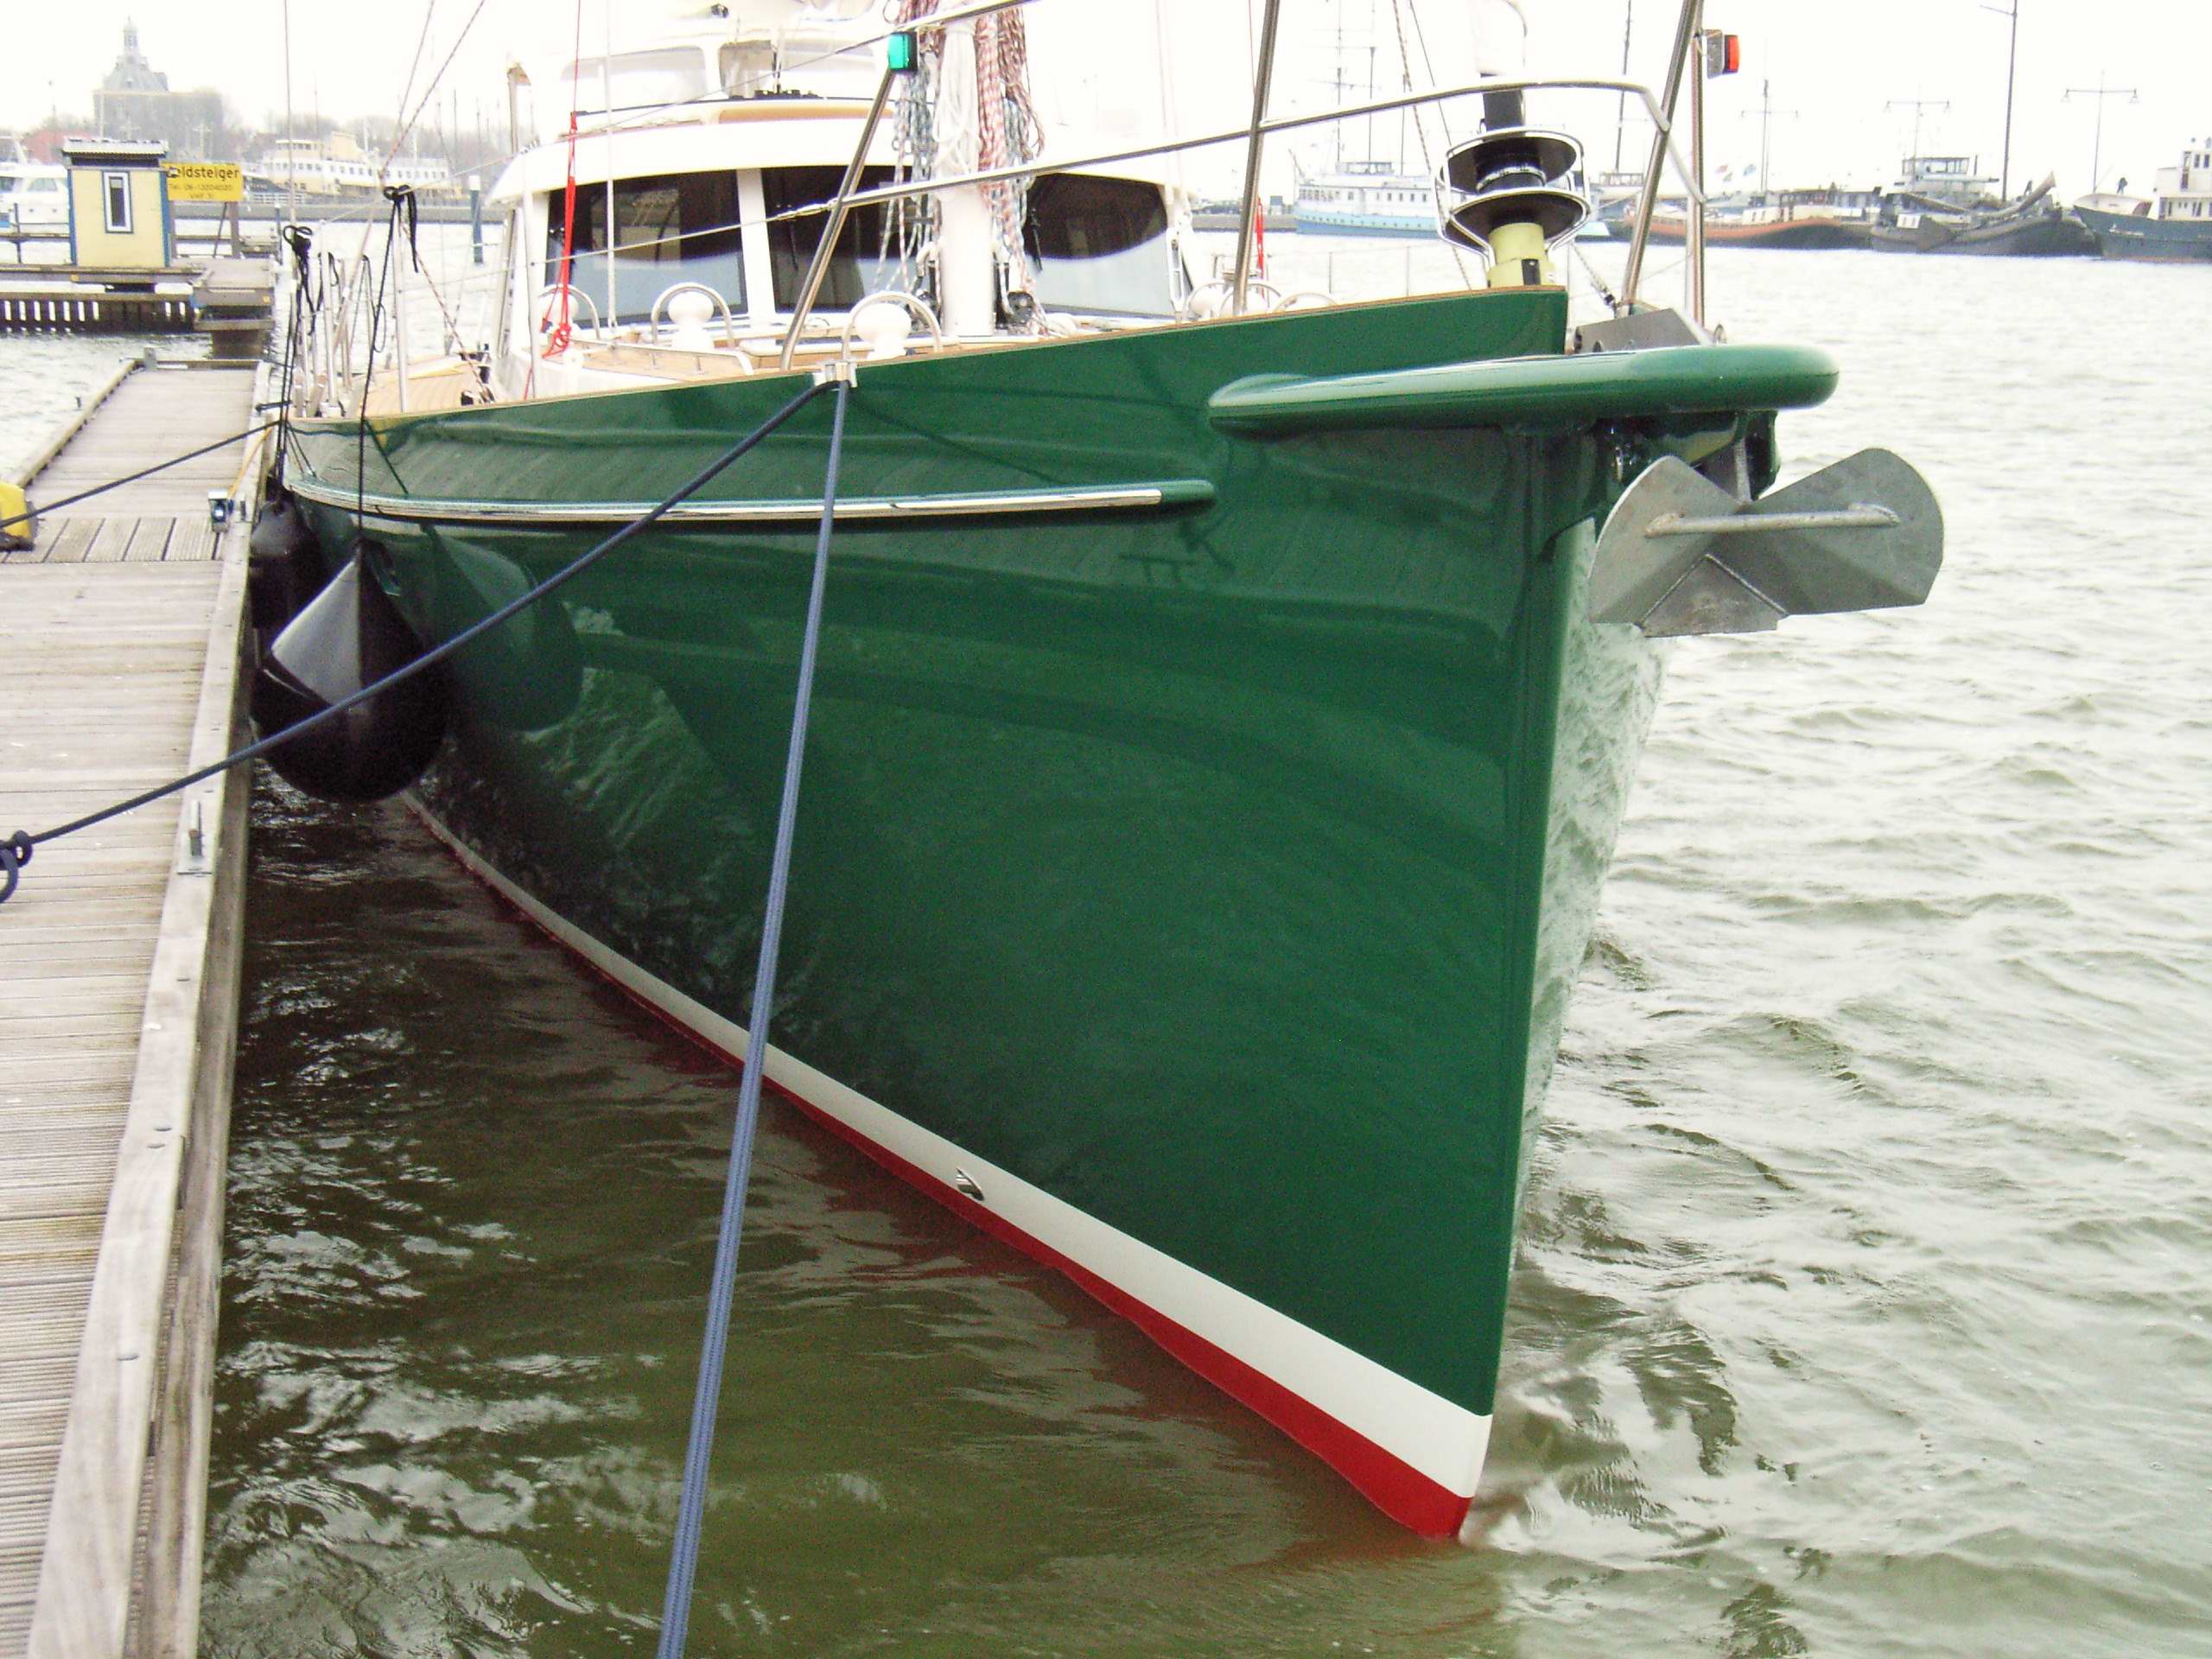 64 foot sailboat